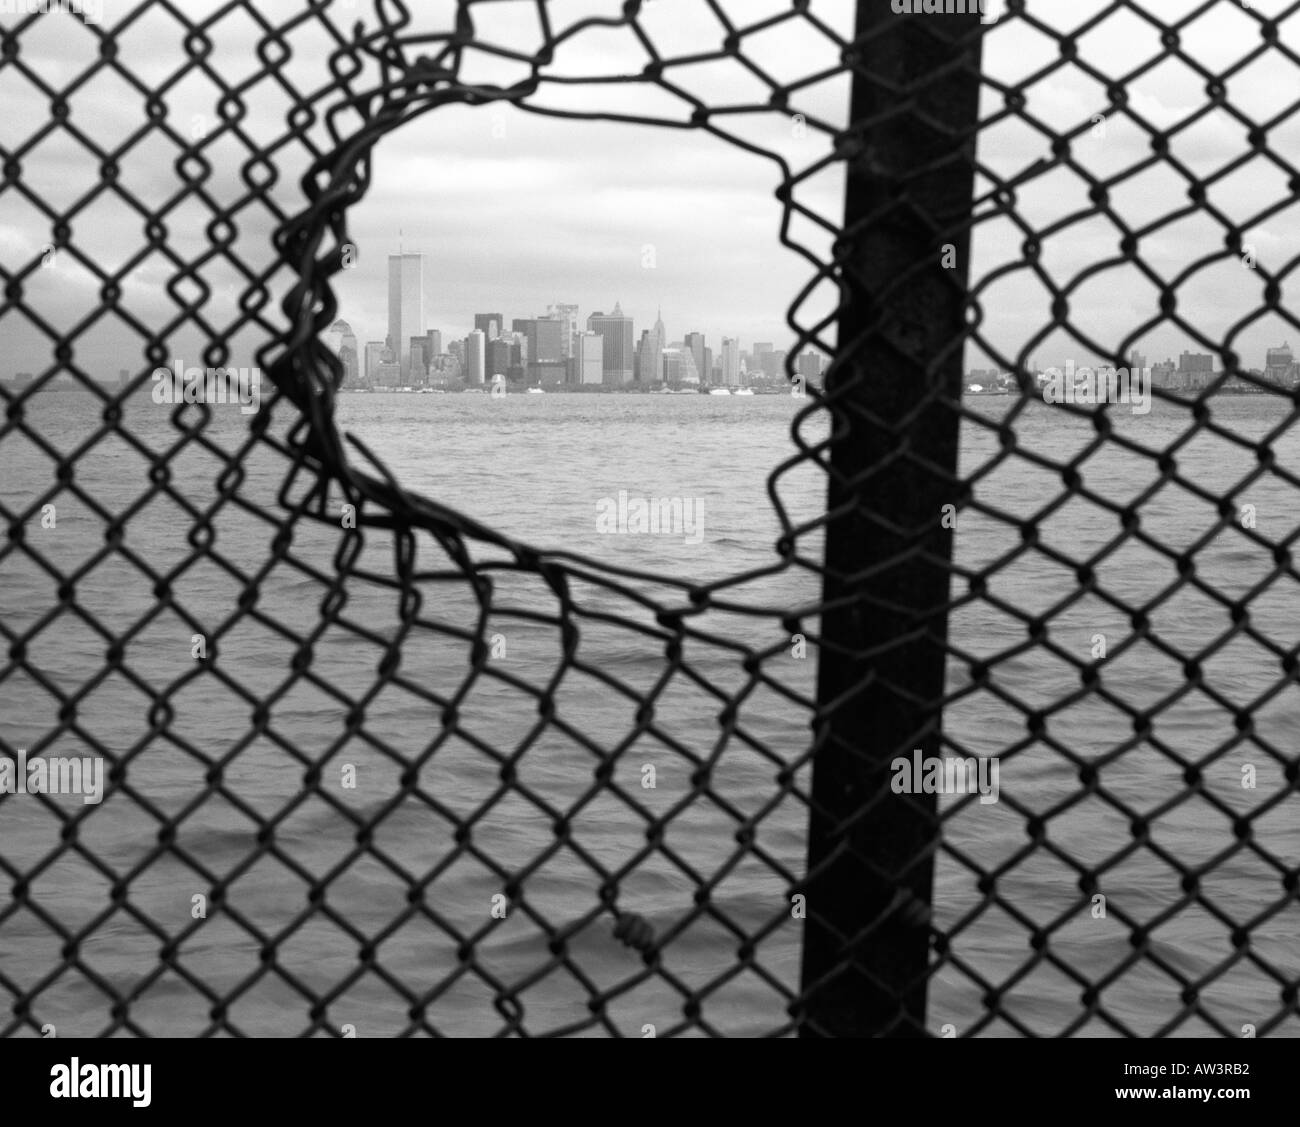 Lower Manhattan Skyline angesehen durch Zaun mit Loch, New York City, New York, USA. Vor 9/11 Terroranschlag. Stockfoto